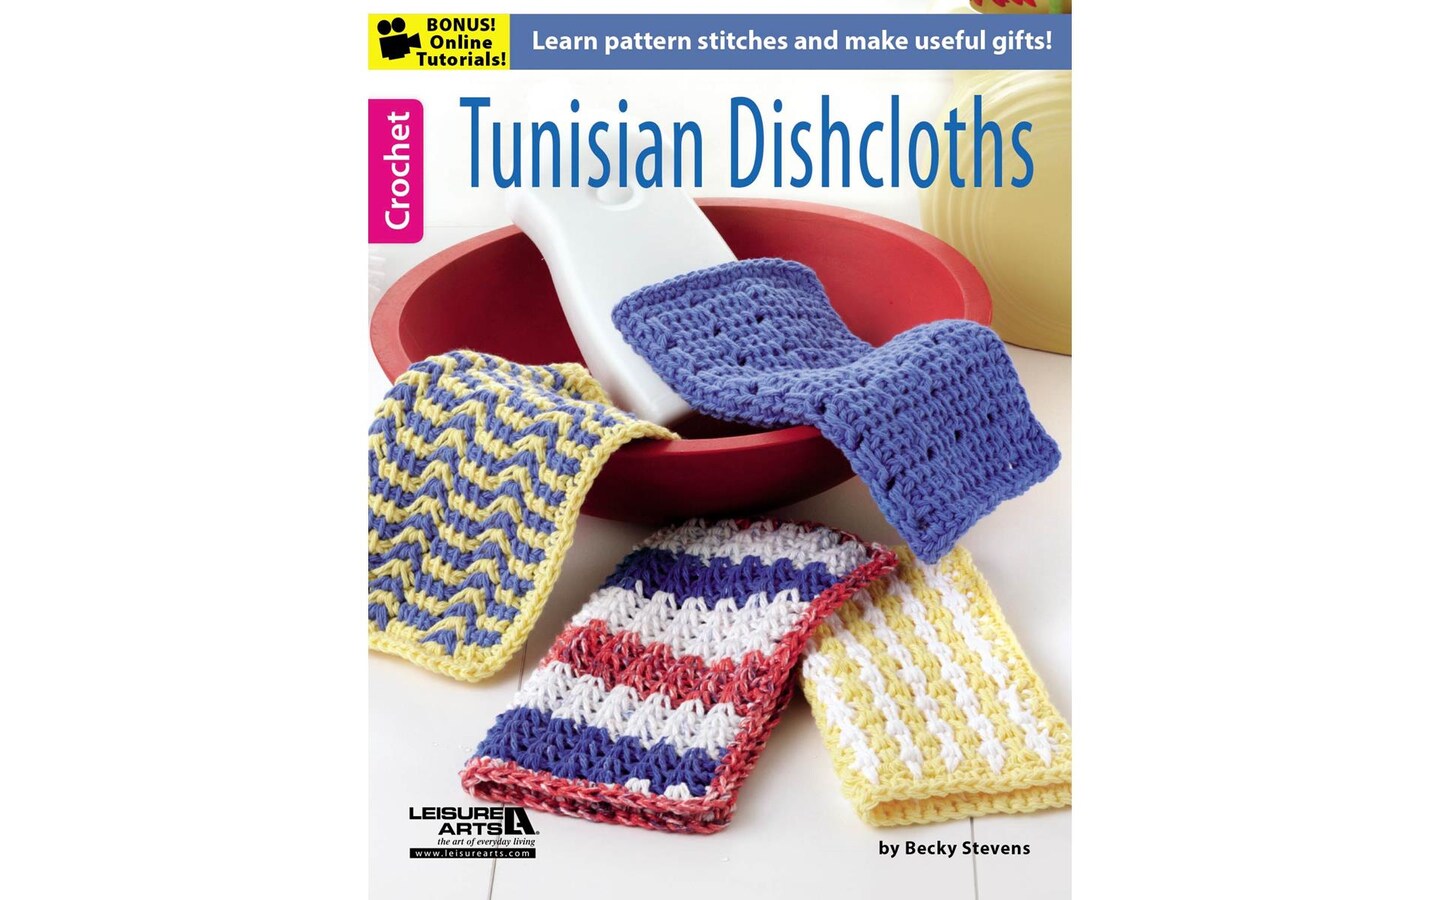 Leisure Arts Tunisian Crochet